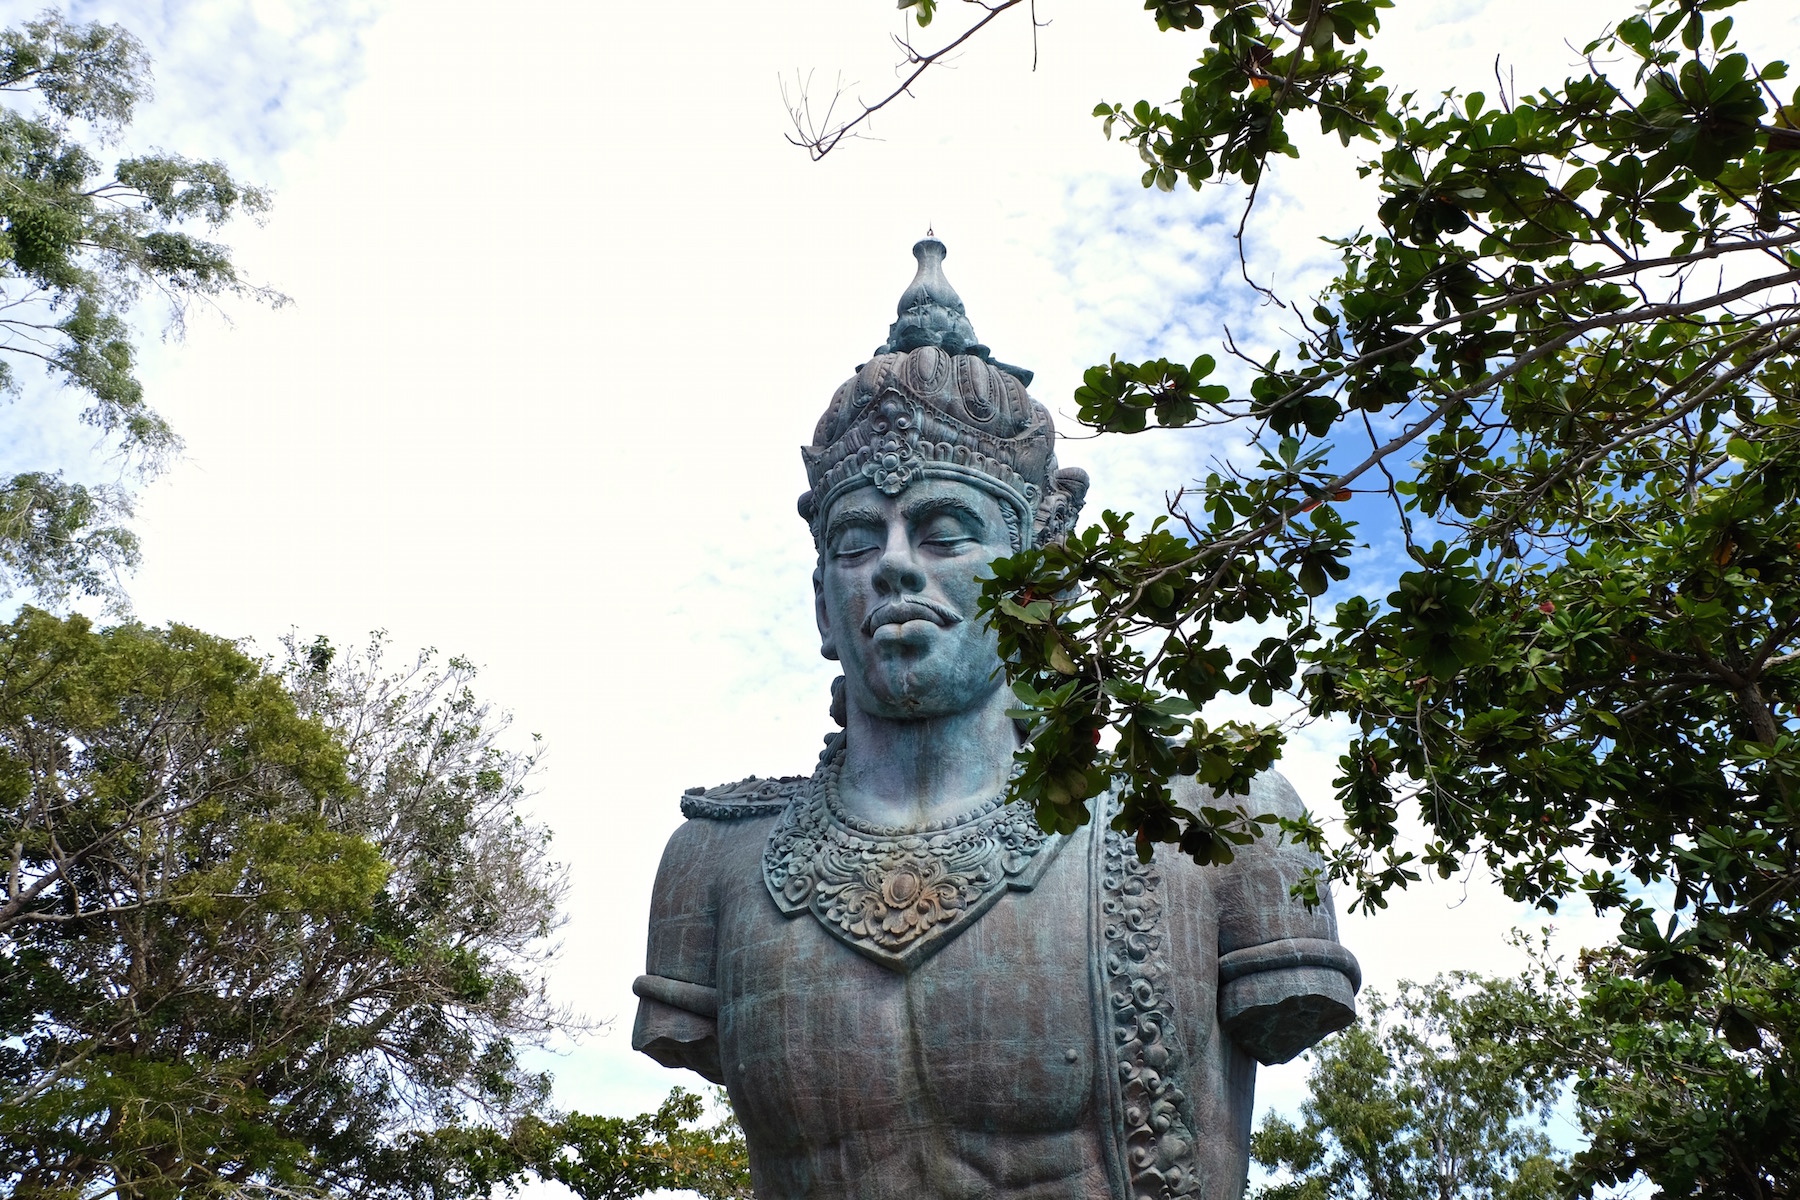  Garuda  Wisnu  Kencana Cultural Park  in Bali  Michelle 